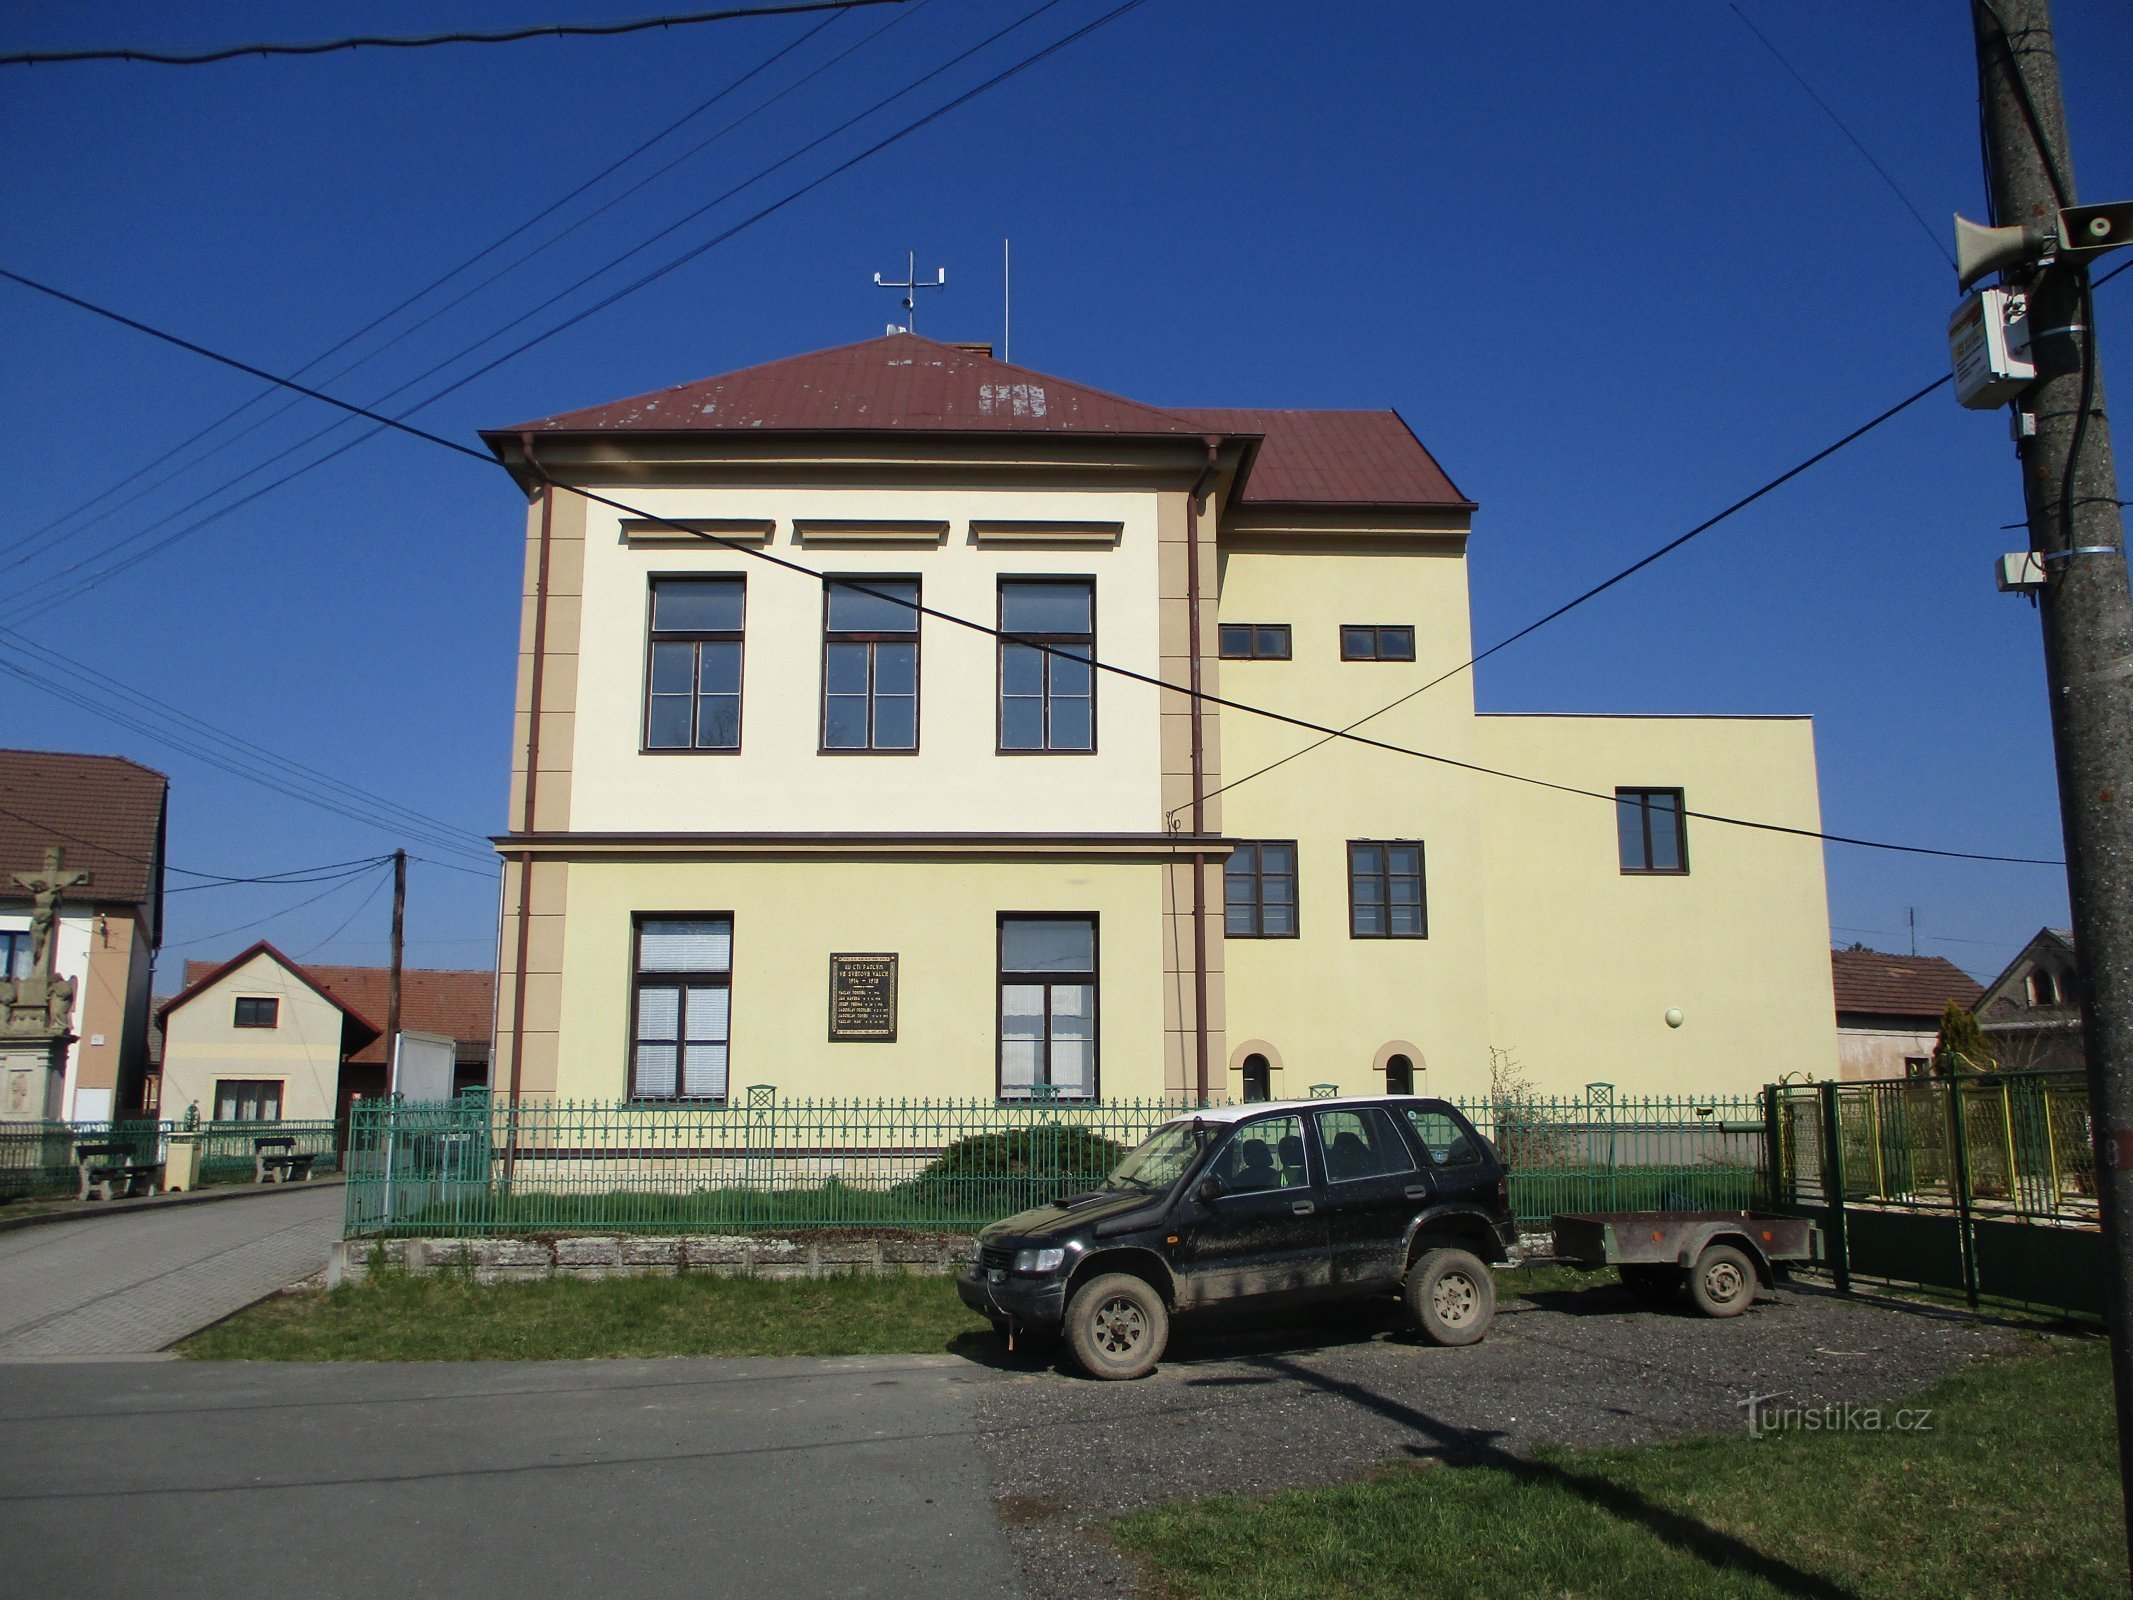 Skole med forlængelse (Račice nad Trotinou, 2.4.2020. april XNUMX)